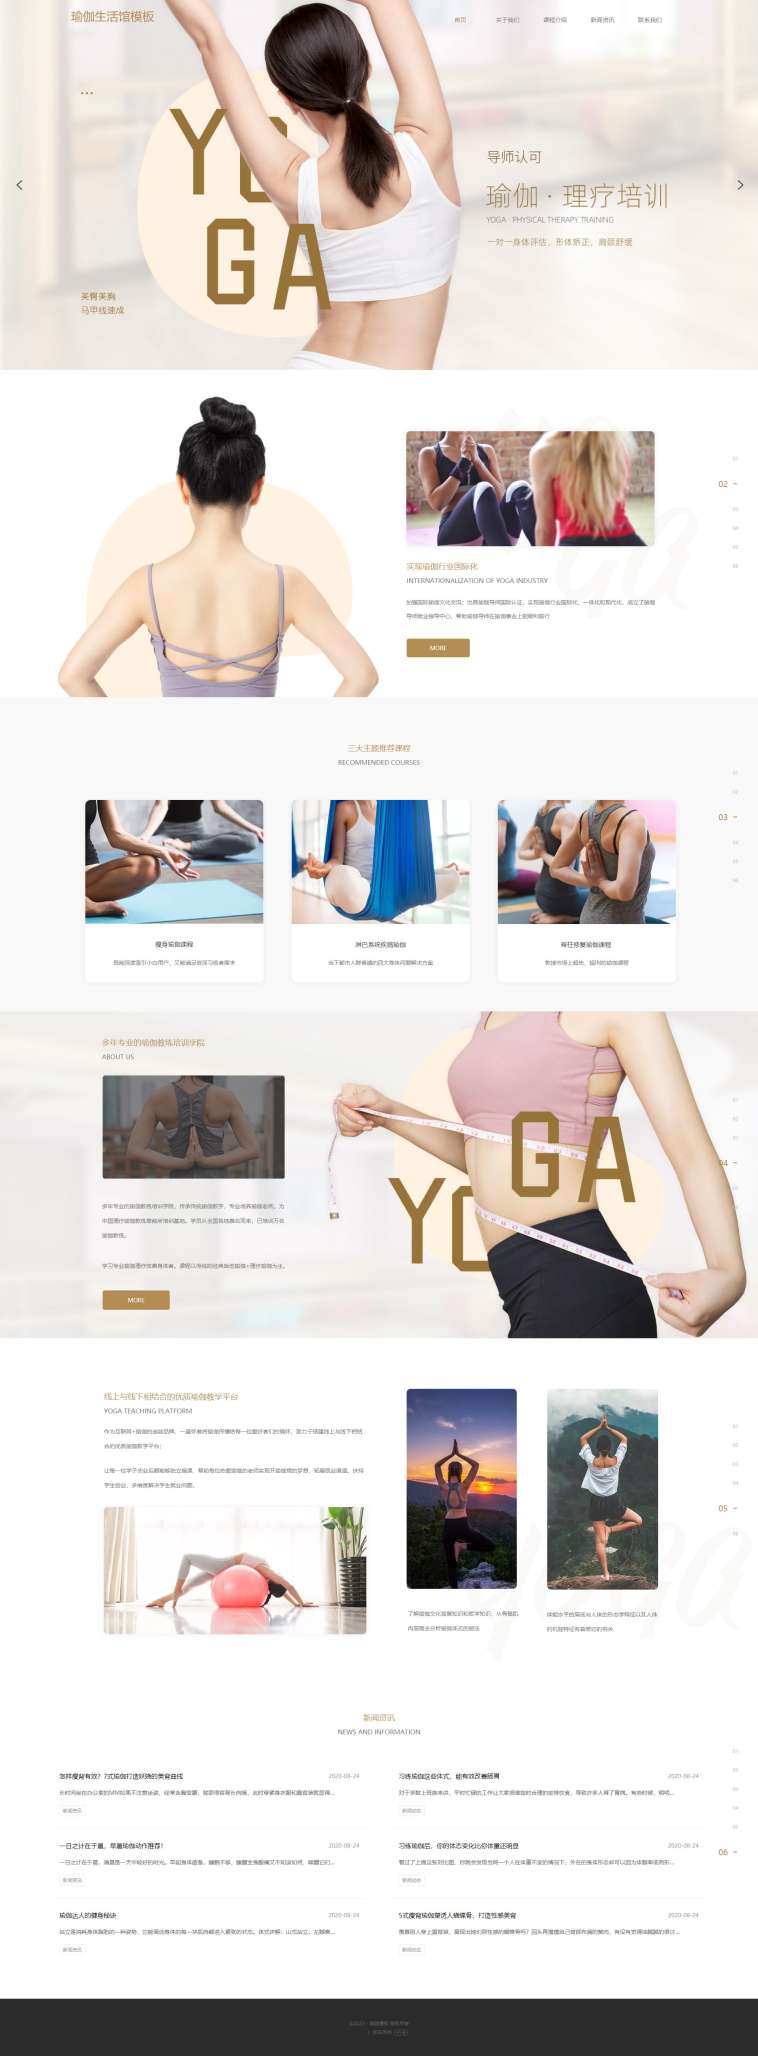 个性瑜伽生活馆网站模板[演示]